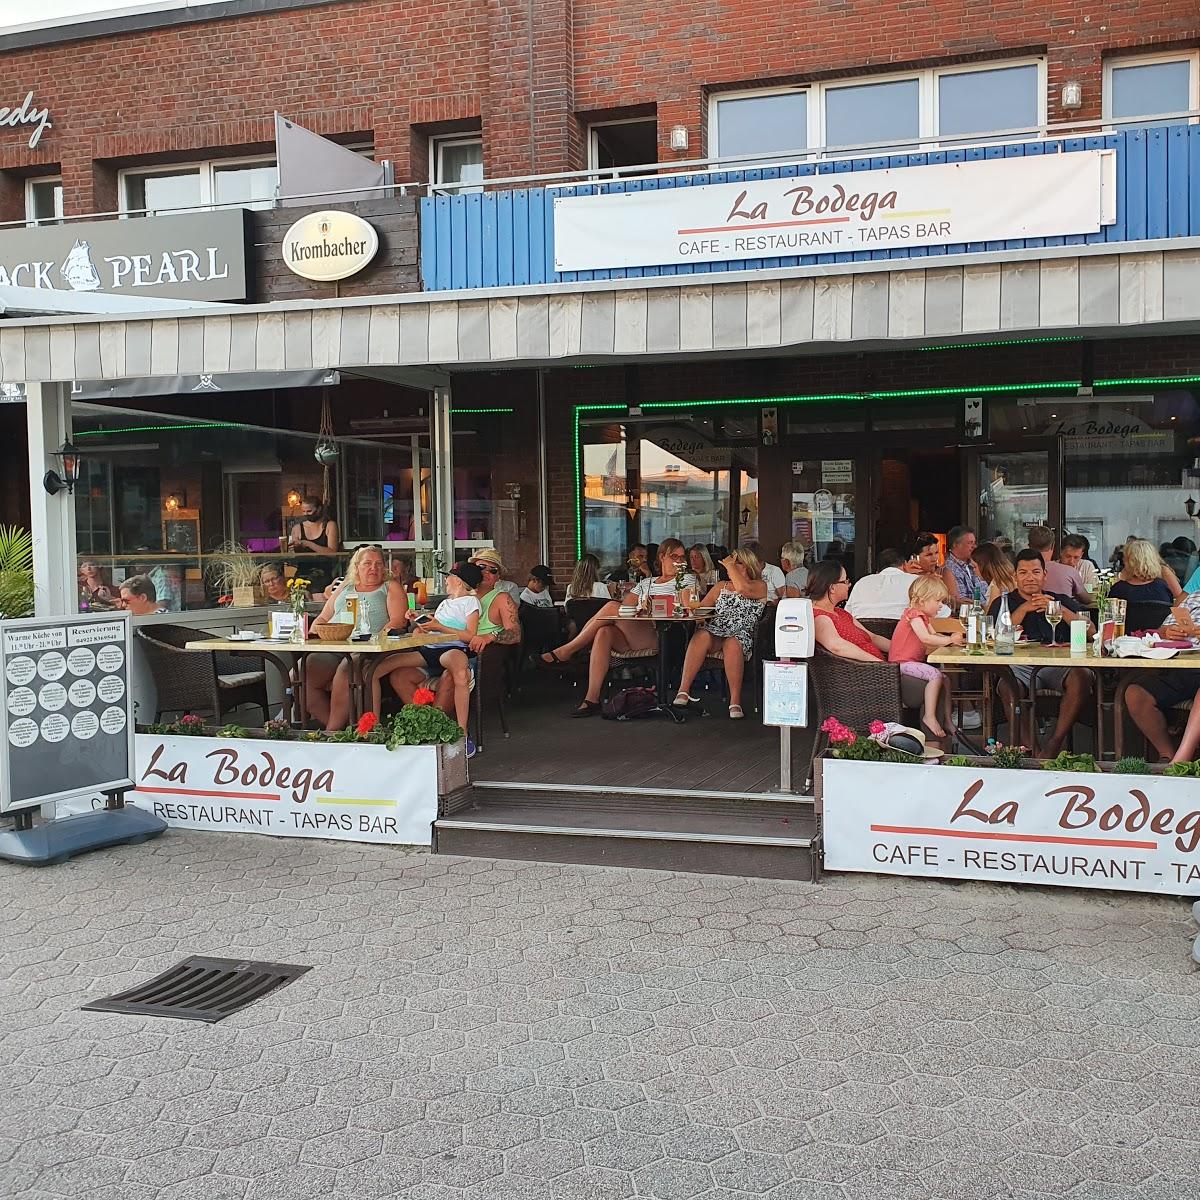 Restaurant "La Bodega" in Borkum